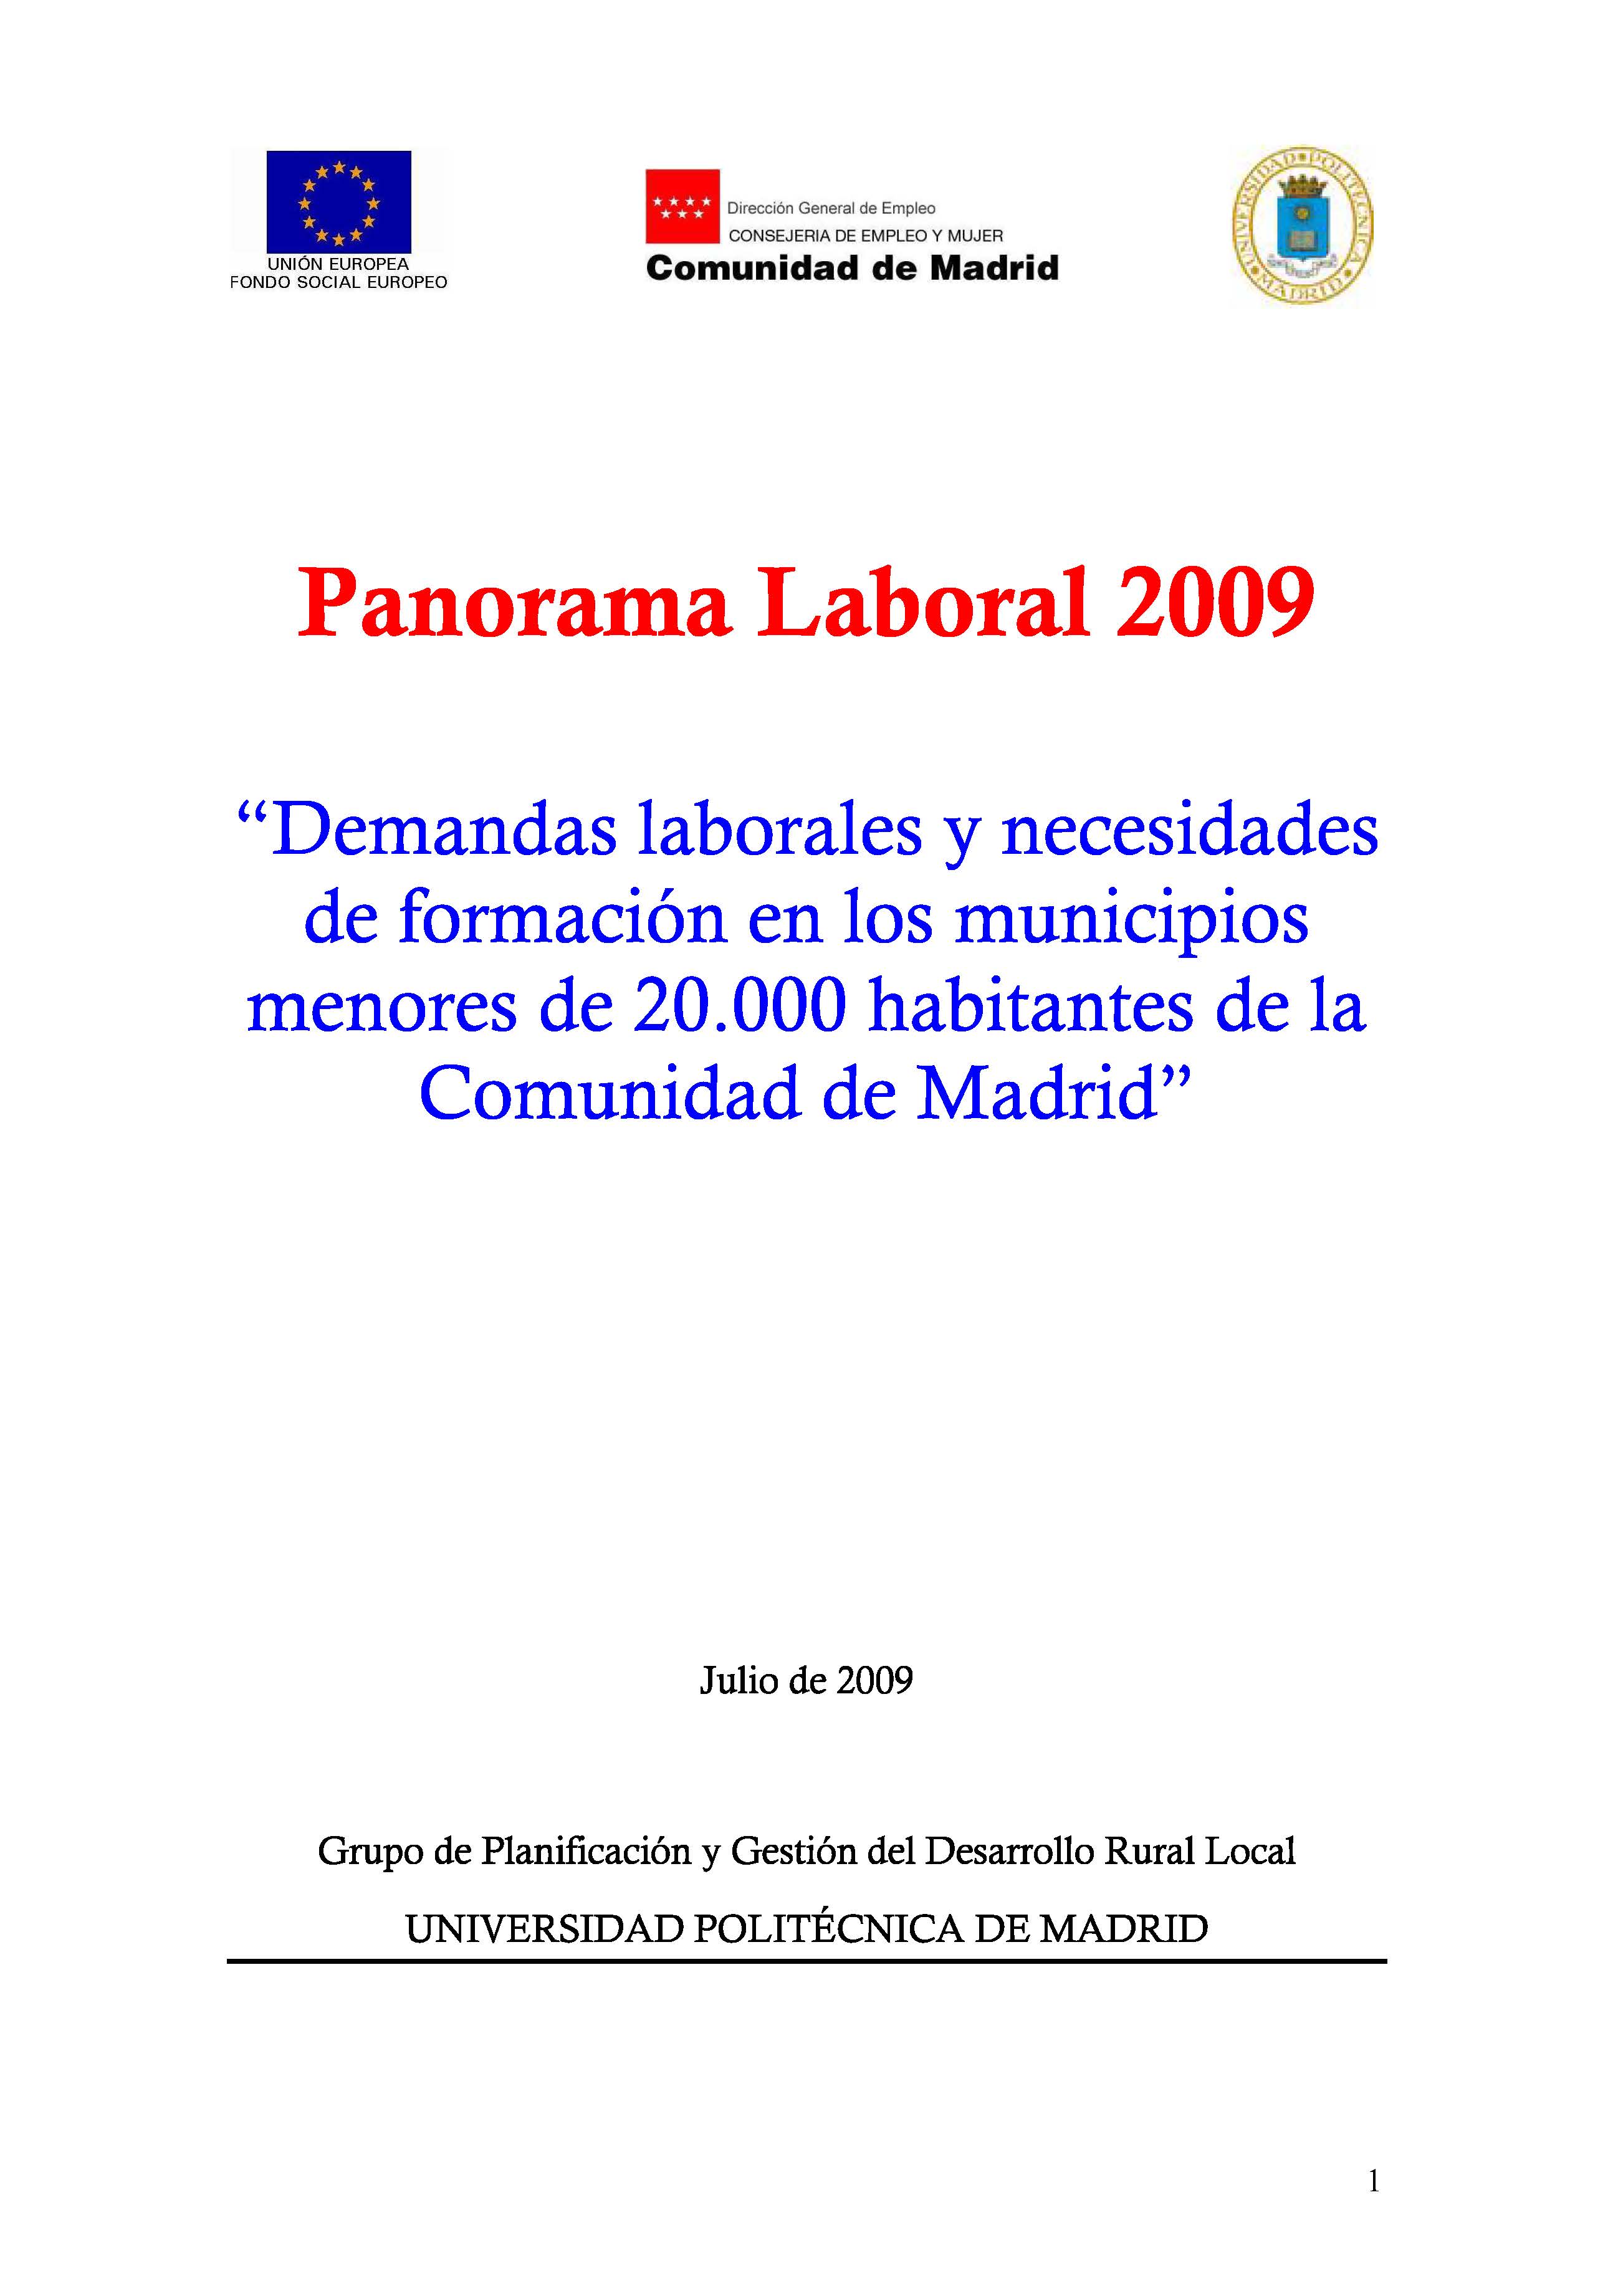 Portada de Panorama Laboral 2009. Demandas laborales y necesidades de formación en los municipios de la Comunidad de Madrid menores de 20.000 habitantes